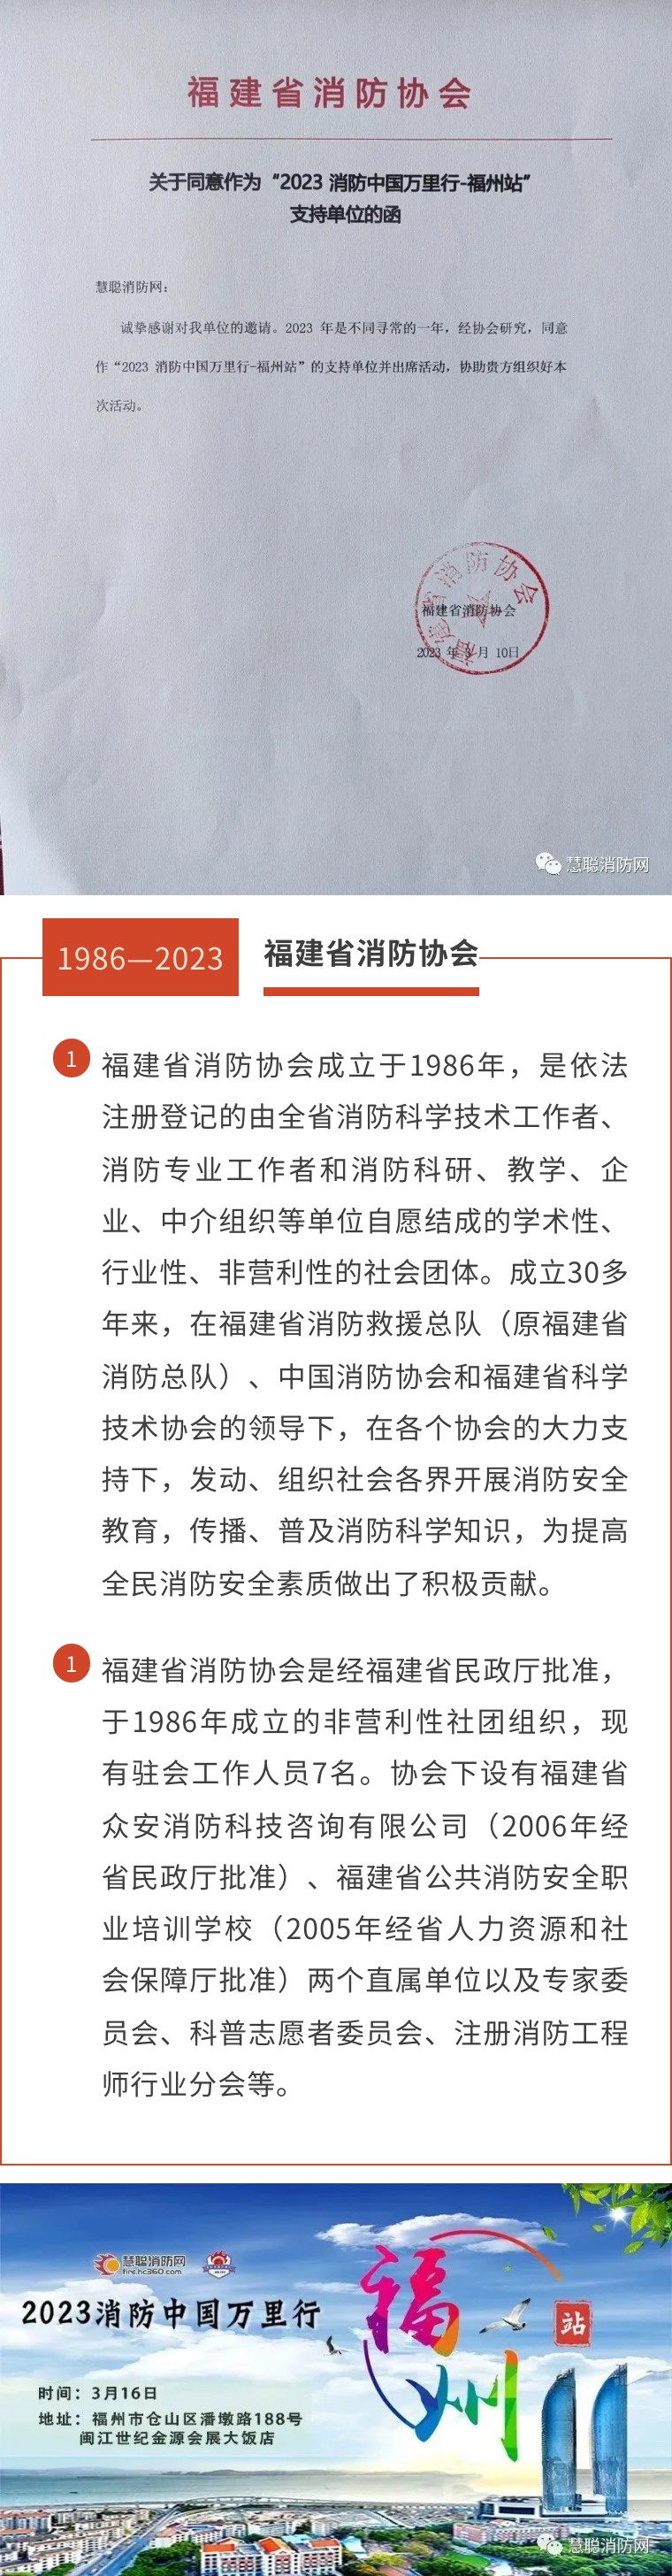 福建省消防协会成“2023 消防中国万里行-福州站”支持单位